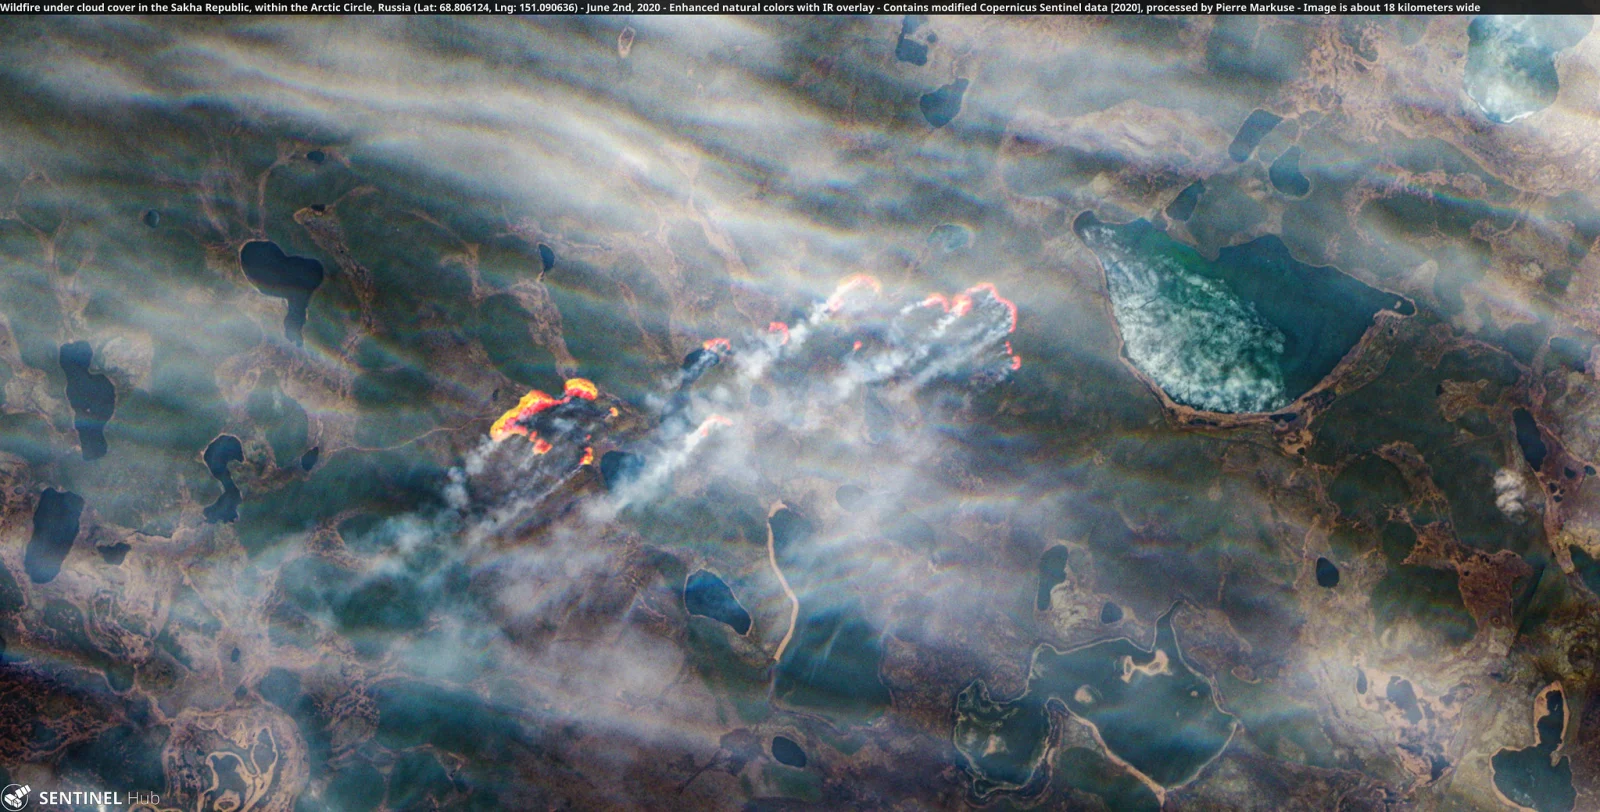 Пожежа в Якутії, 2 червня: фото Pierre Markuse, програма ЄС зі спостережень за Землею